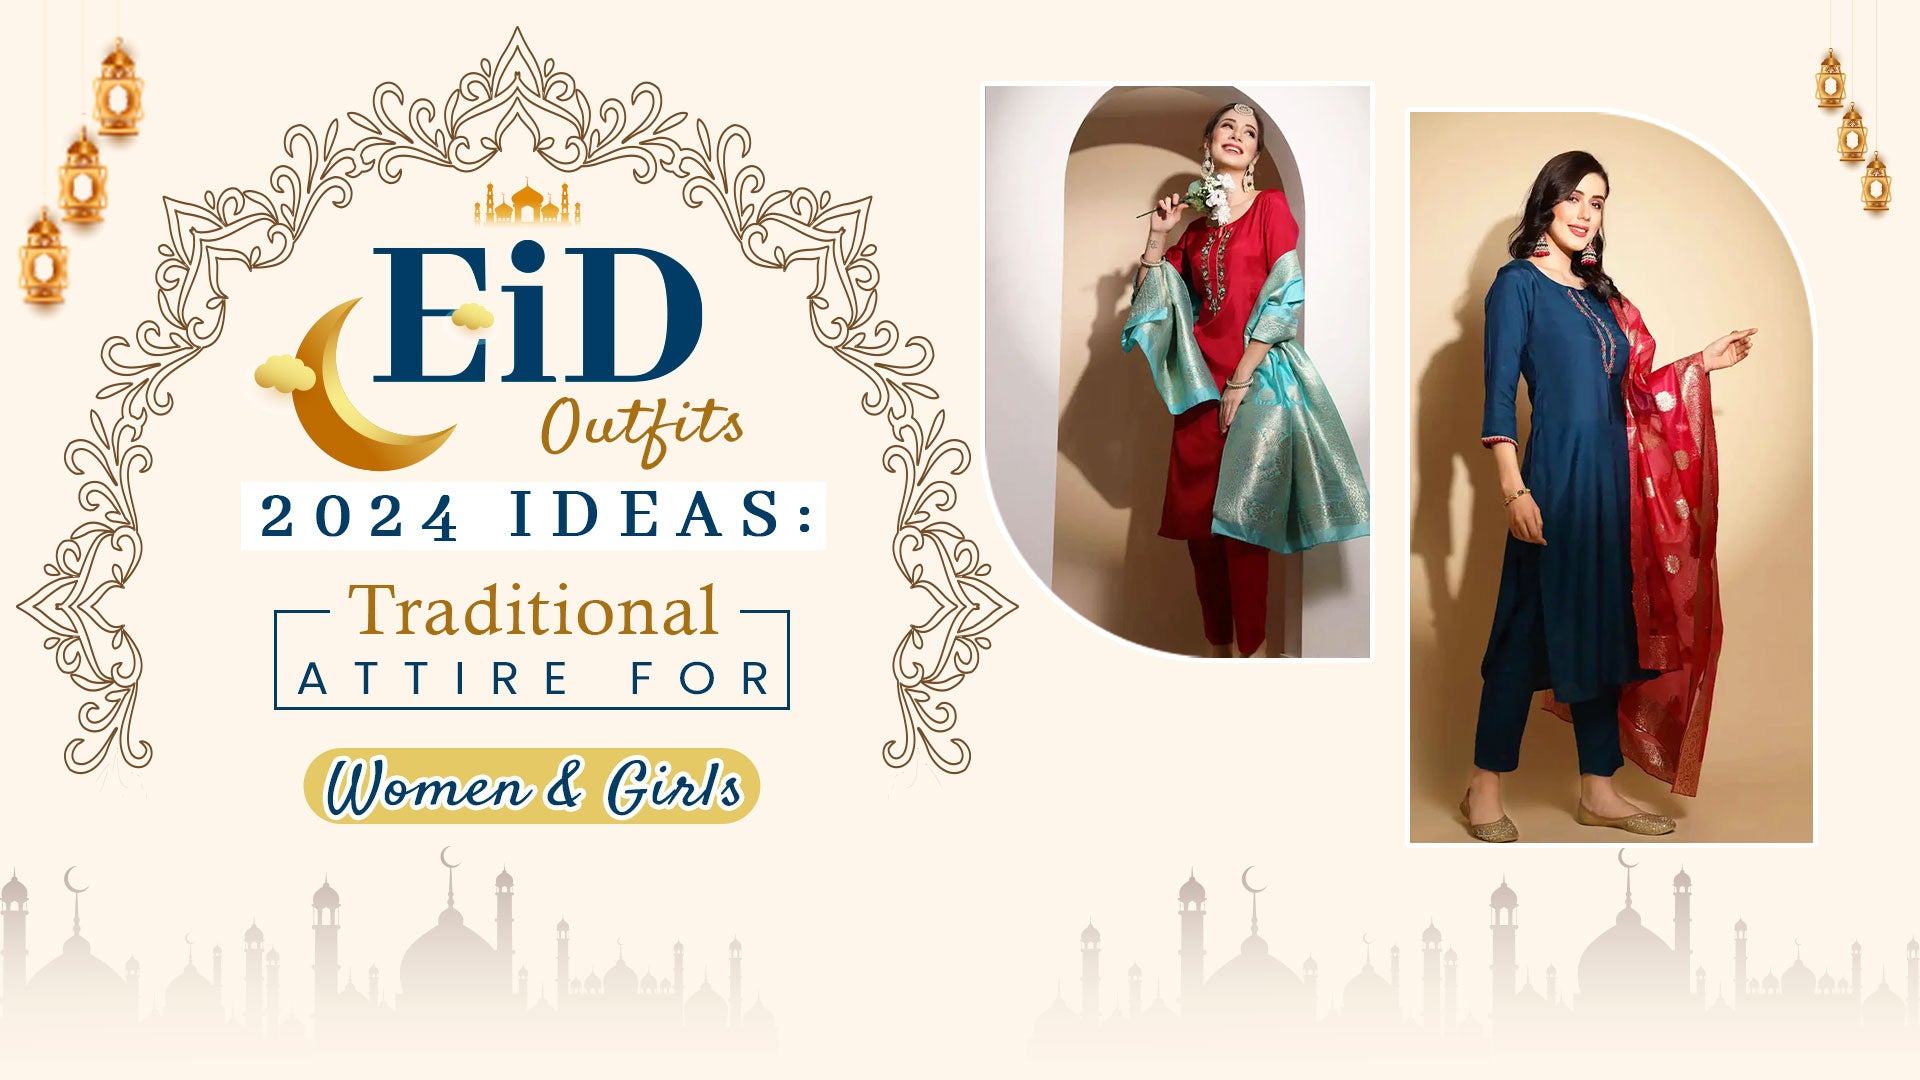 Eid Outfits ideas 2024 